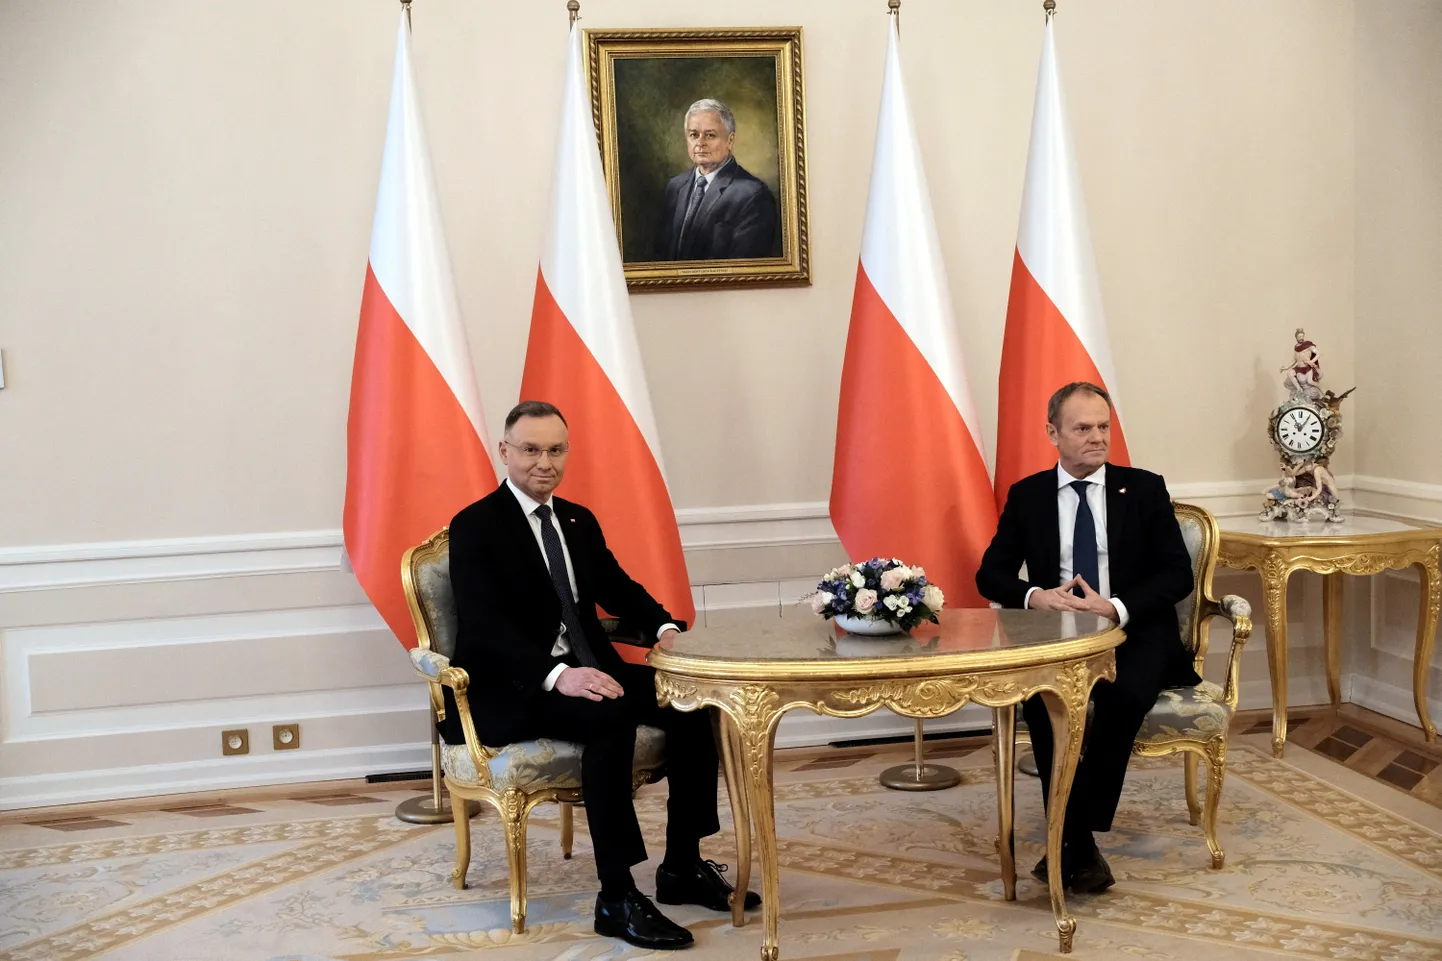 Polijas prezidents Andžejs Duda tikšanās laikā ar premjerministru Donaldu Tusku.